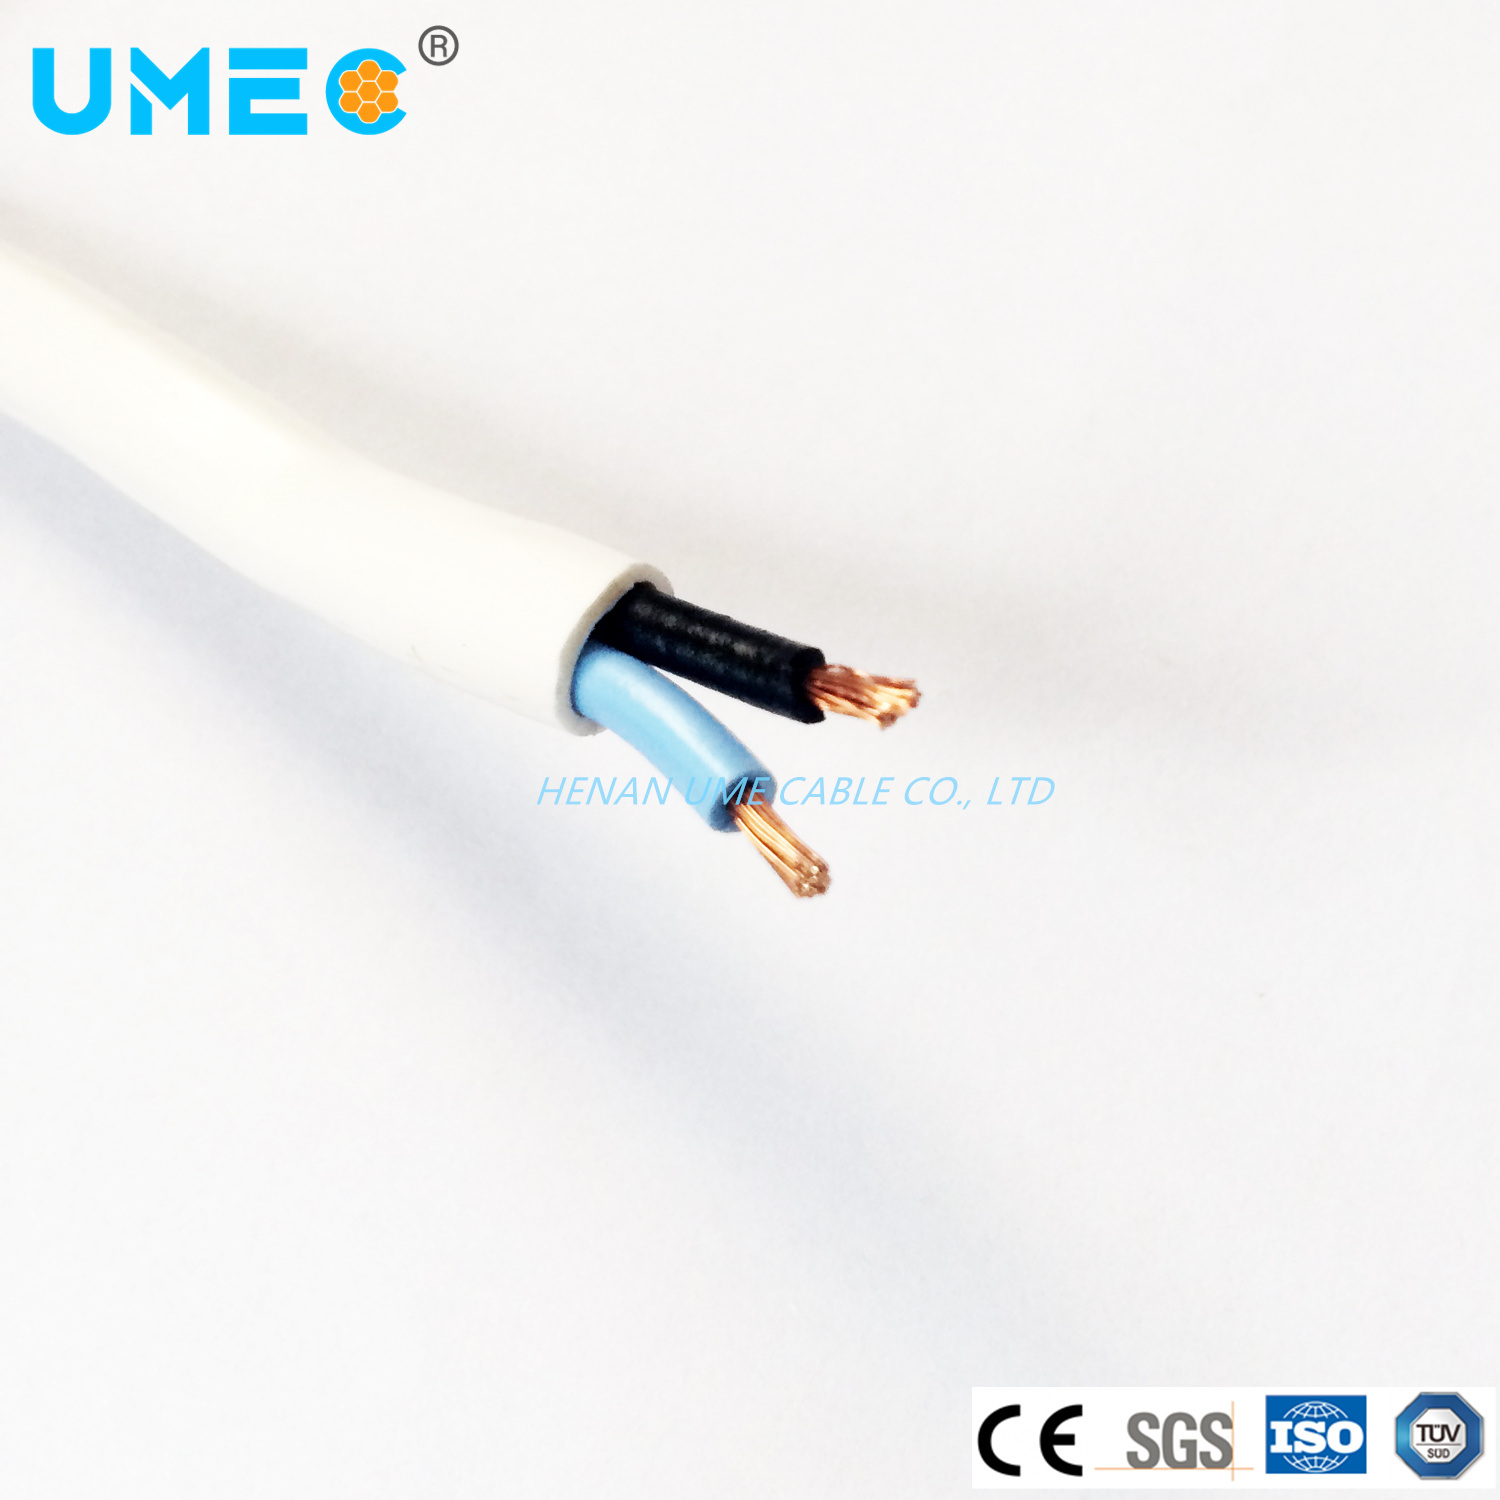 
                Cable Electrica Cu/Al Conductores aislados con PVC, el cable plano recubierto de PVC BVVB Blvvb
            